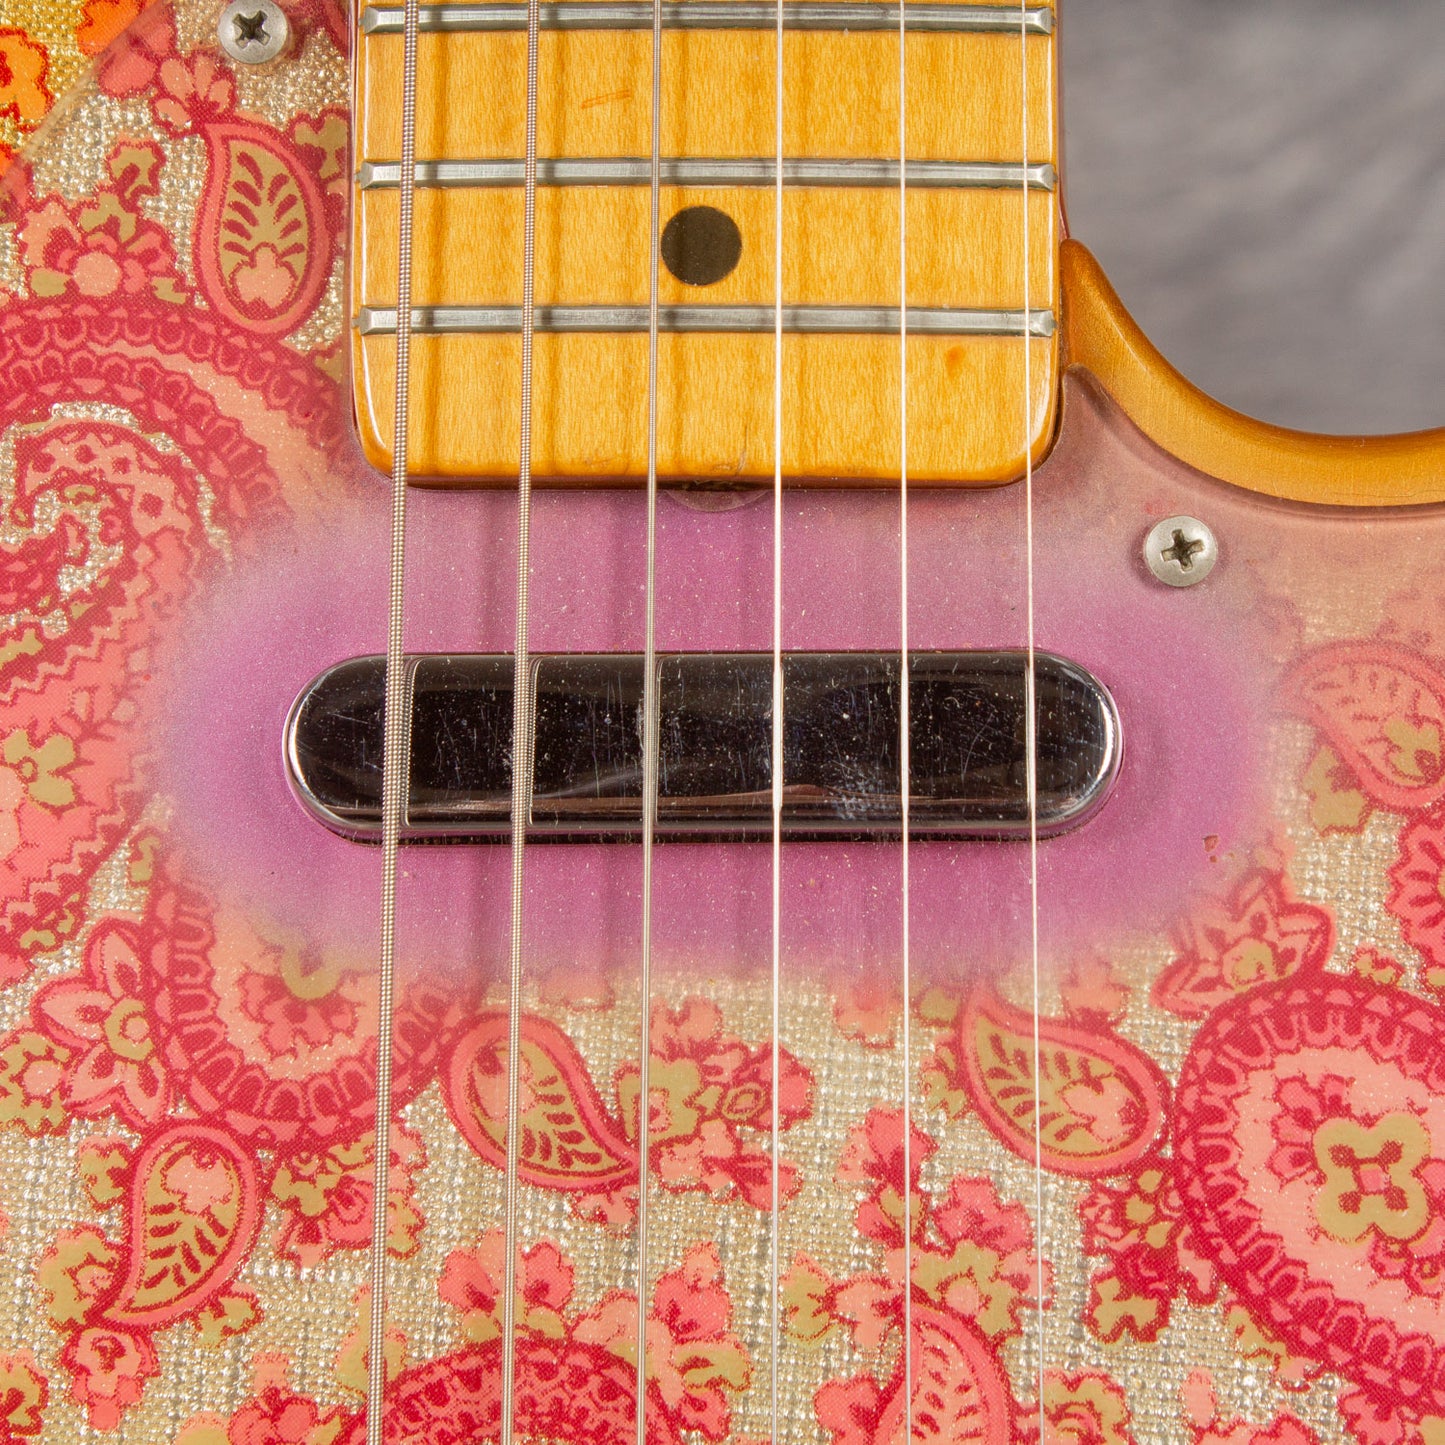 1968 Fender Paisley Telecaster